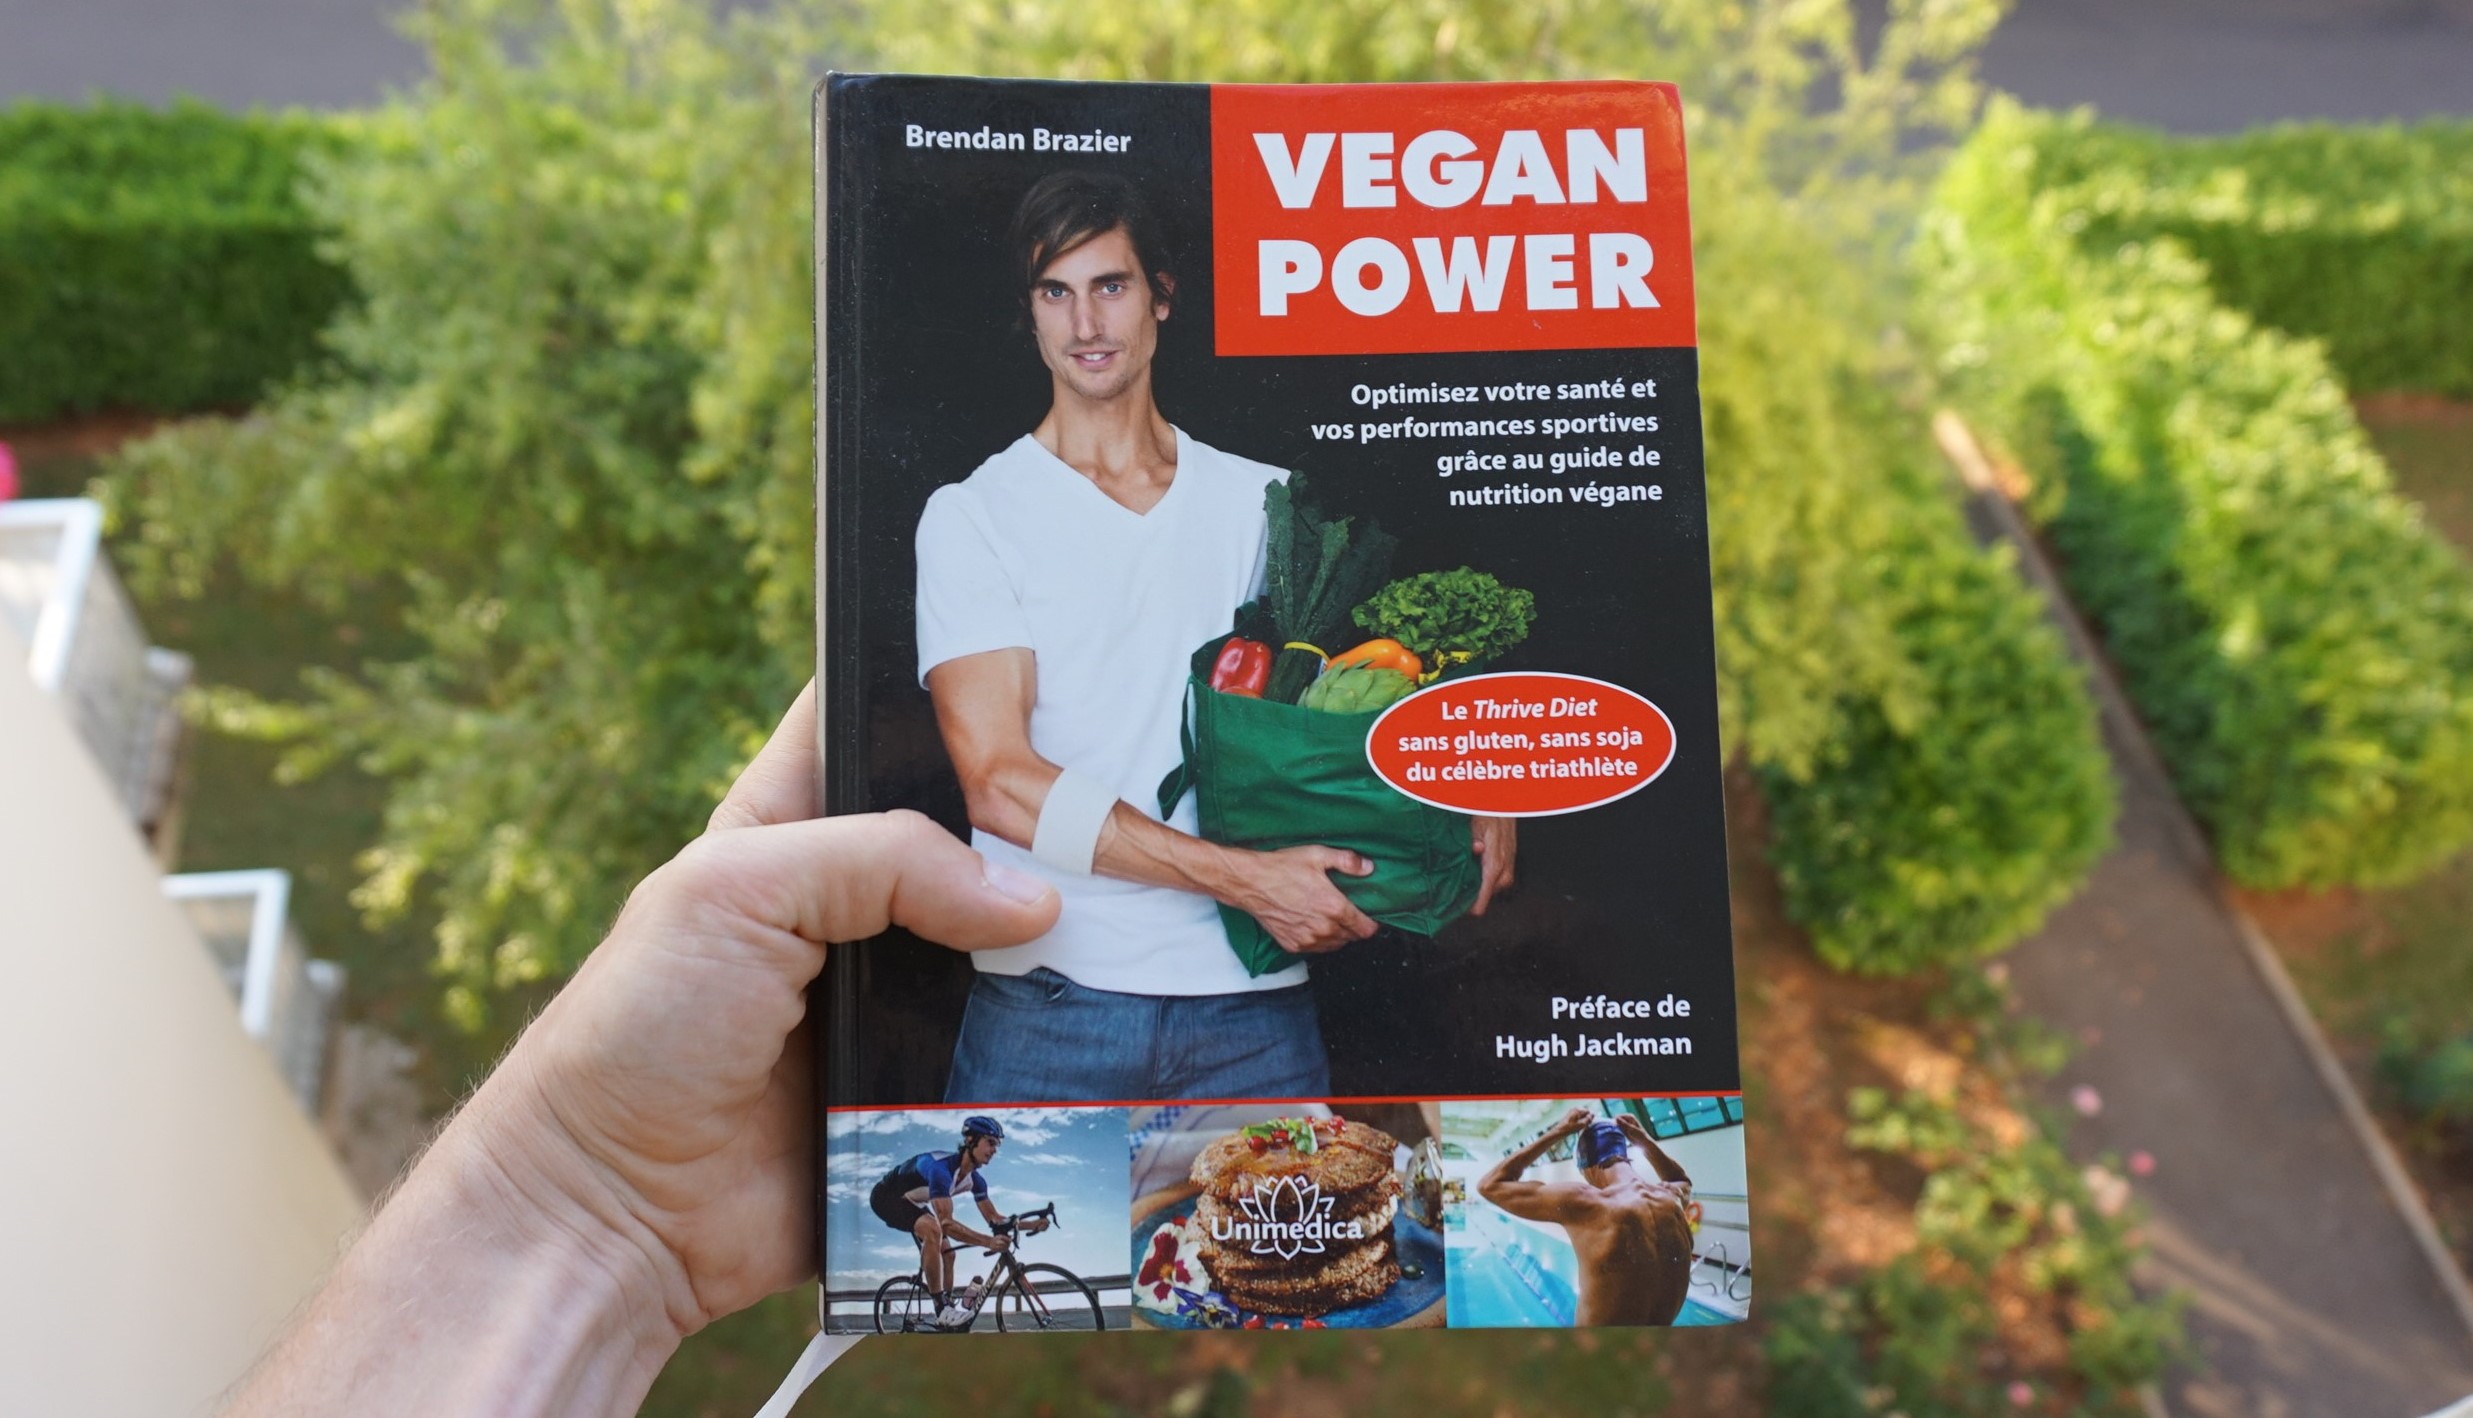 Vegan power de Brendan Brazier : l’alimentation vegan sport et santé